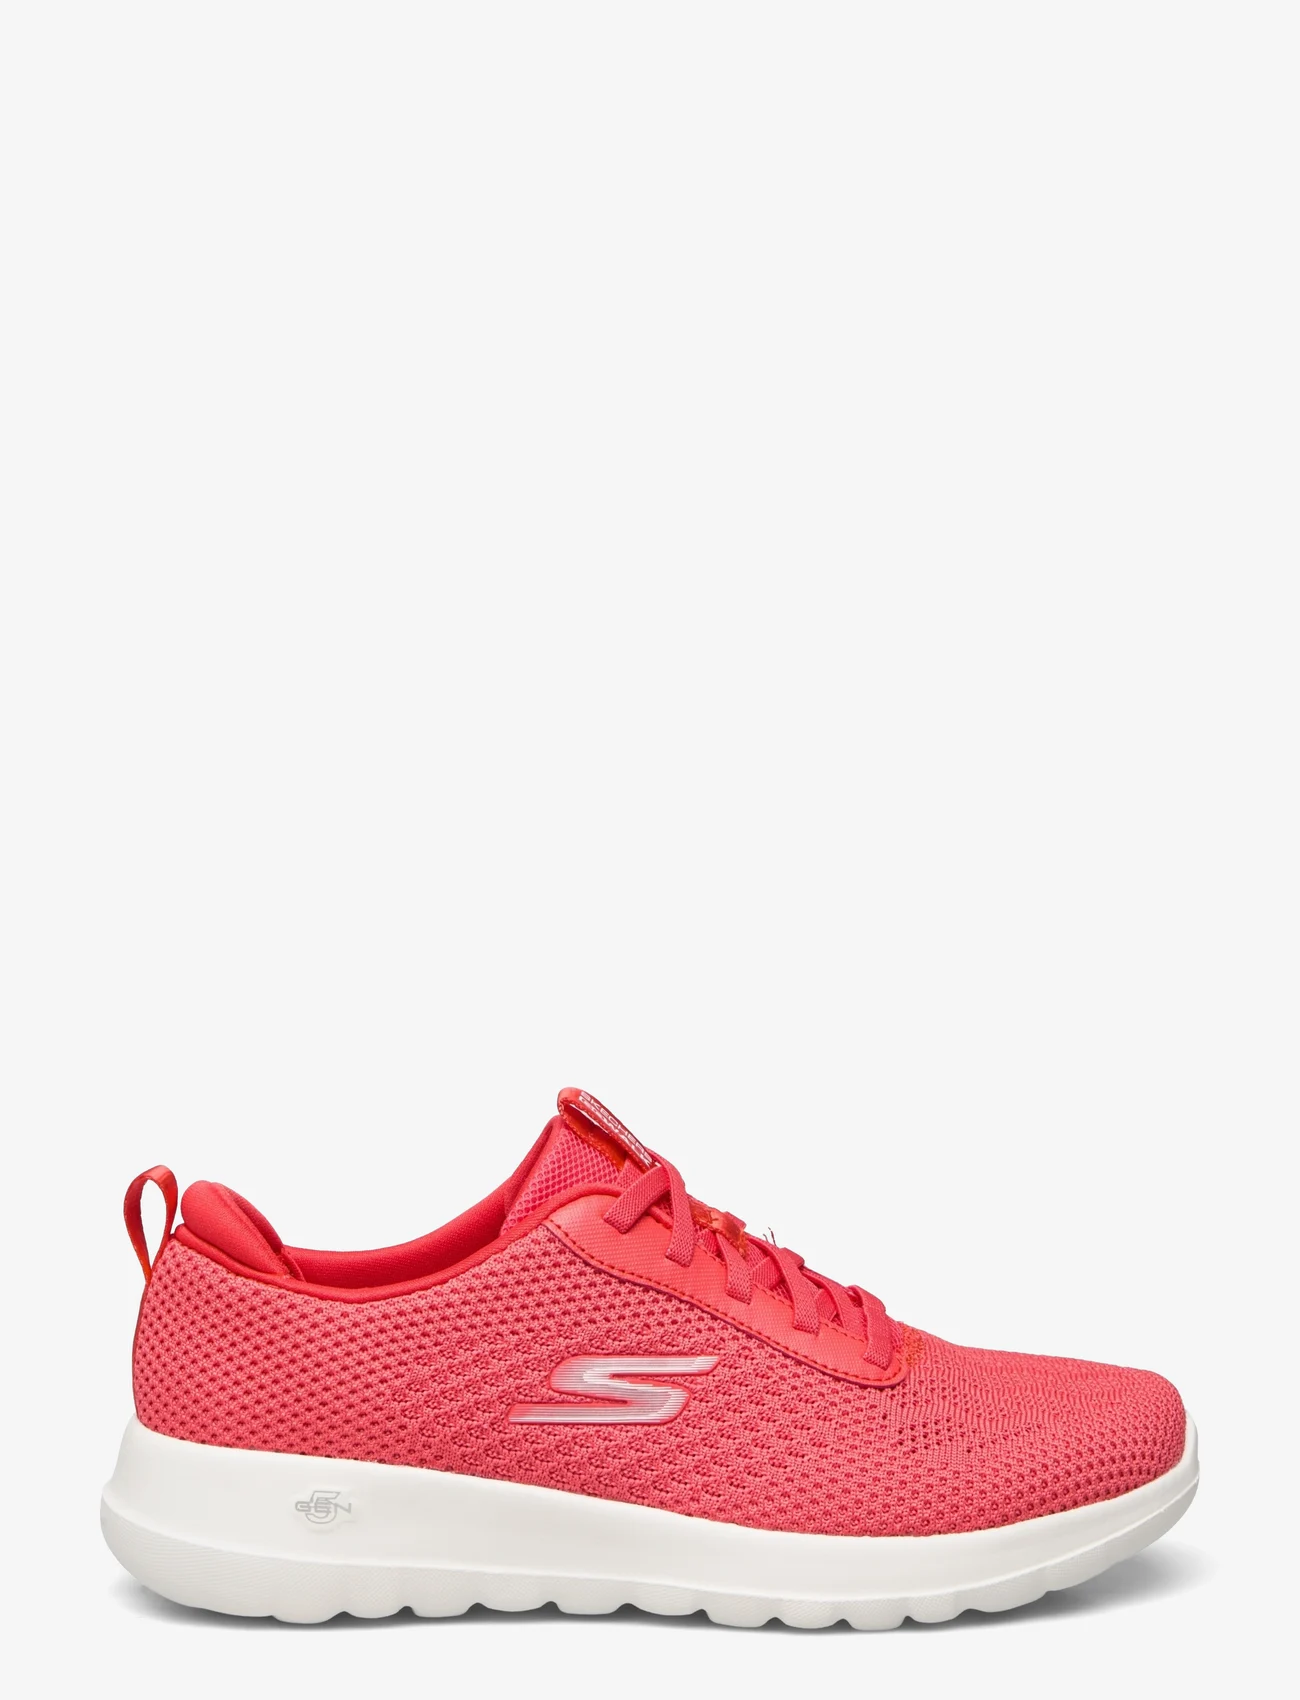 Skechers - Womens Go Walk Joy - Wonderful Spring - lave sneakers - red red - 1